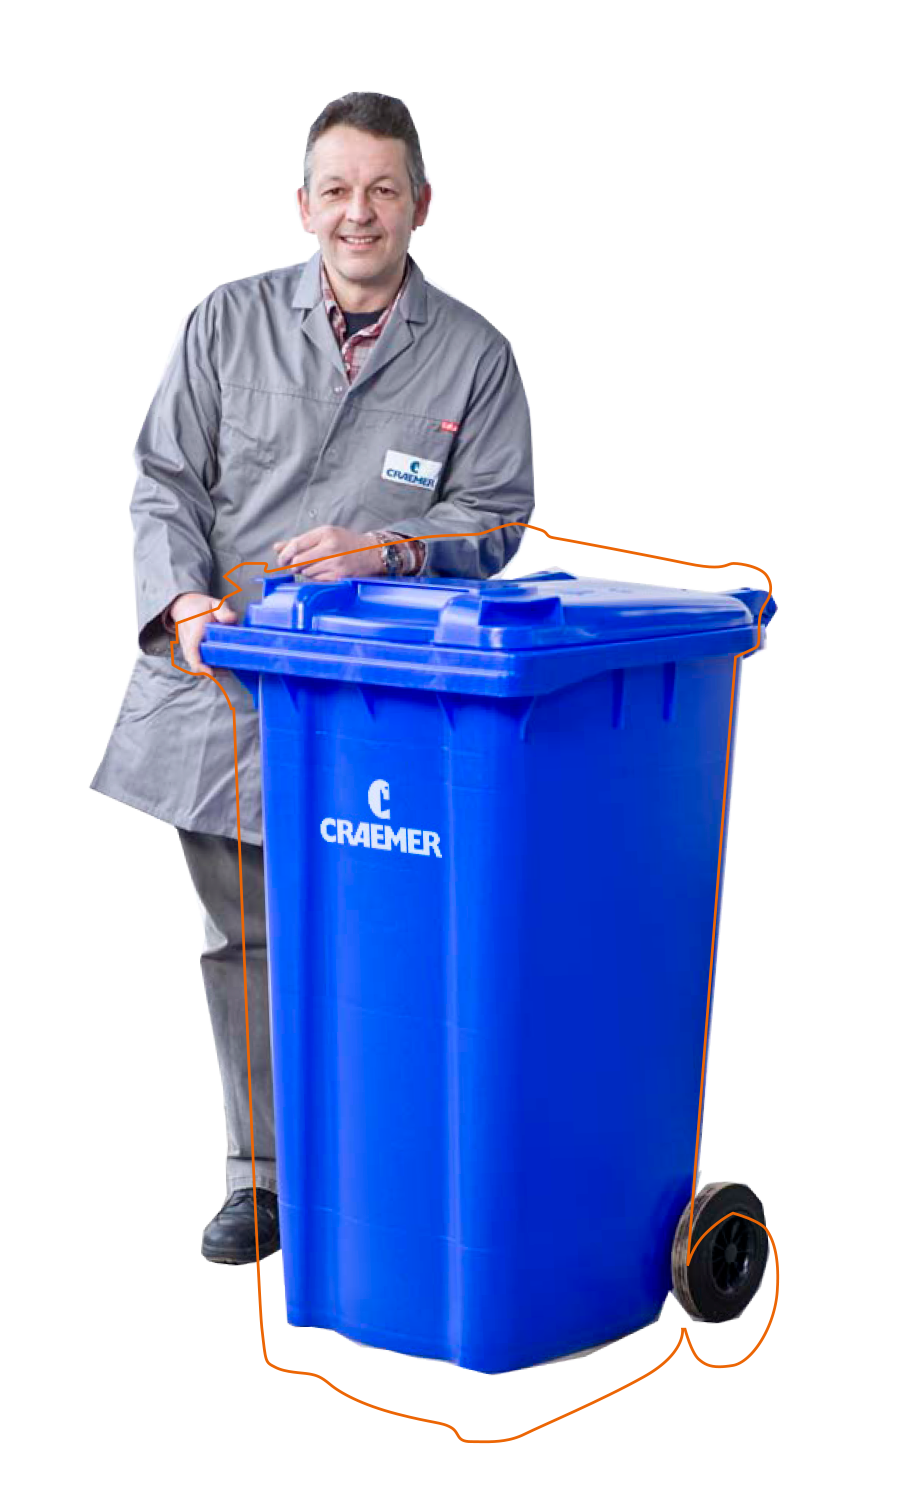 Mann mit blauem Craemer Müllgroßbehälter